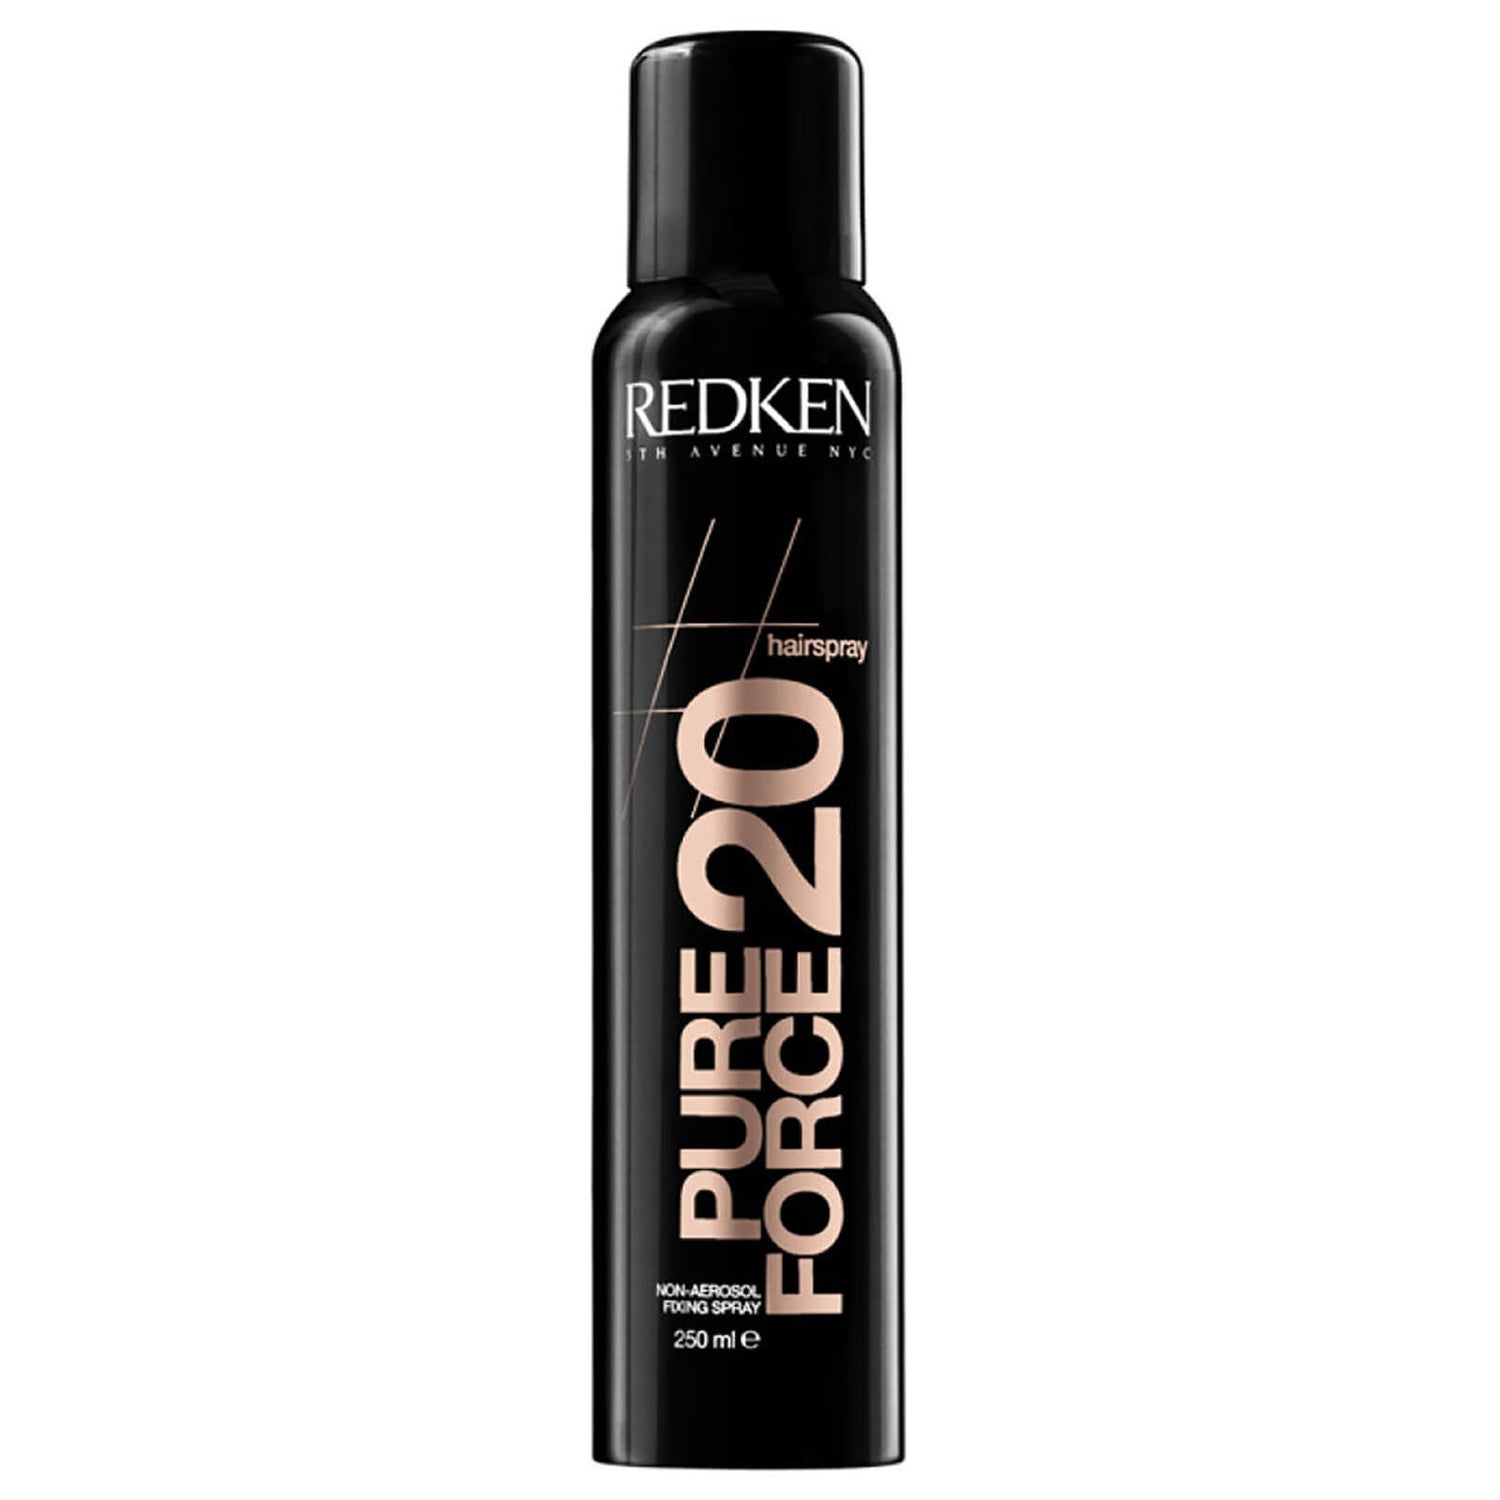 Redken Pure Force 20 (Haarspray)